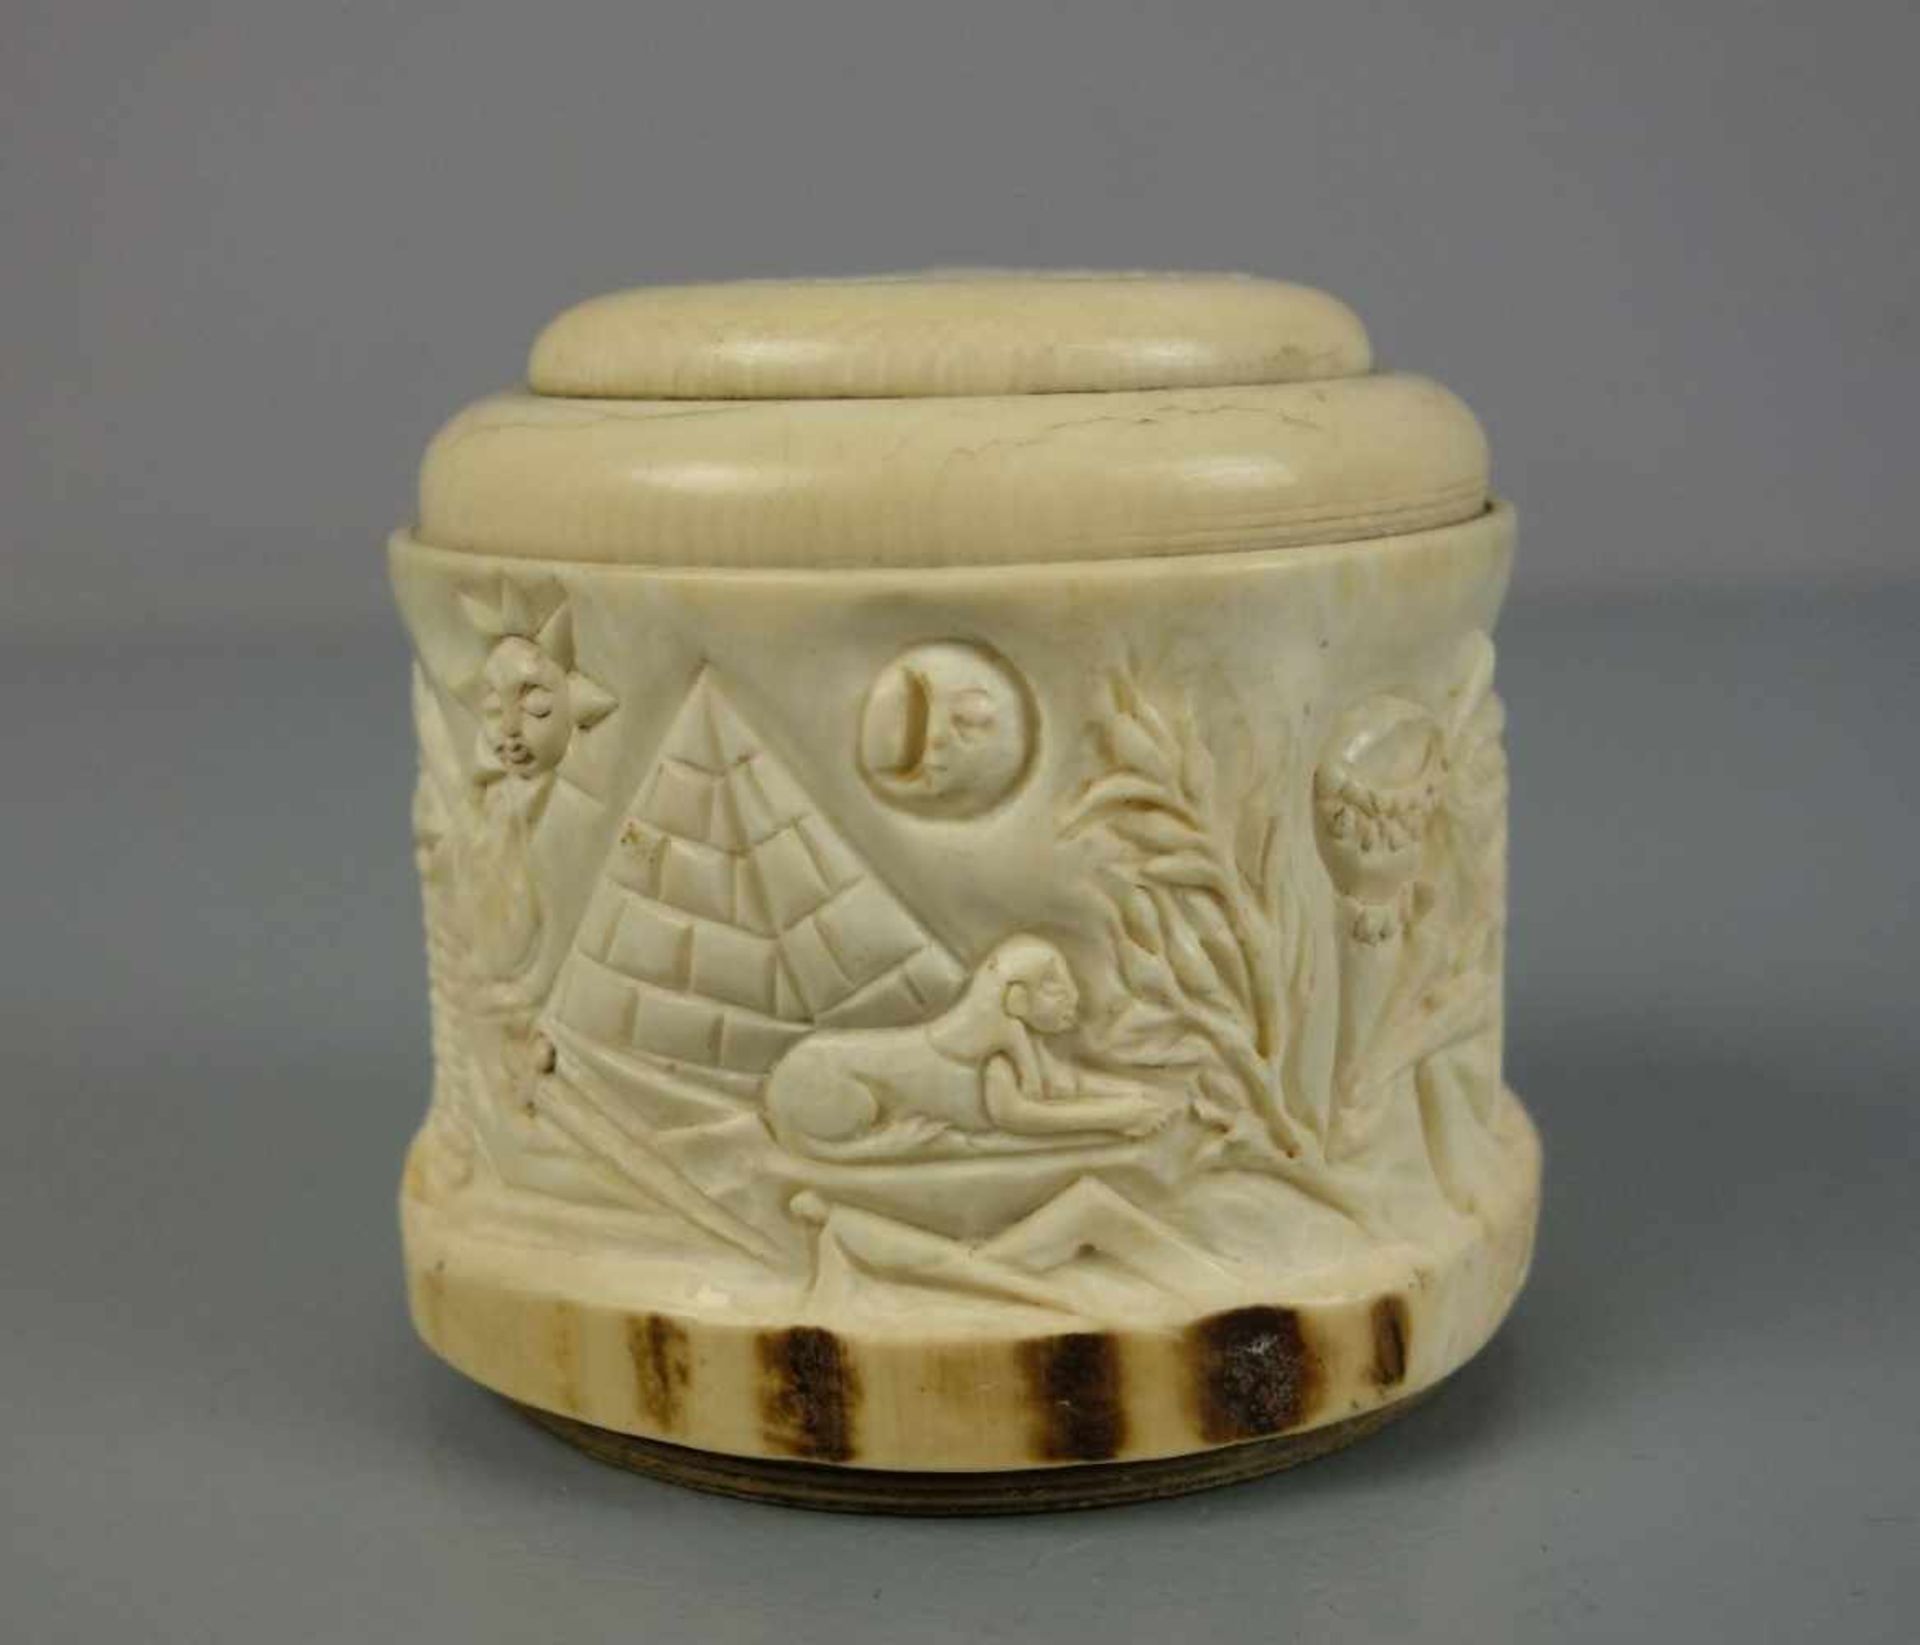 FREIMAURER SPARDOSE / masonic money box, 19. Jh., Elfenbein und Holz , Frankreich, datiert "1839" - Bild 3 aus 5